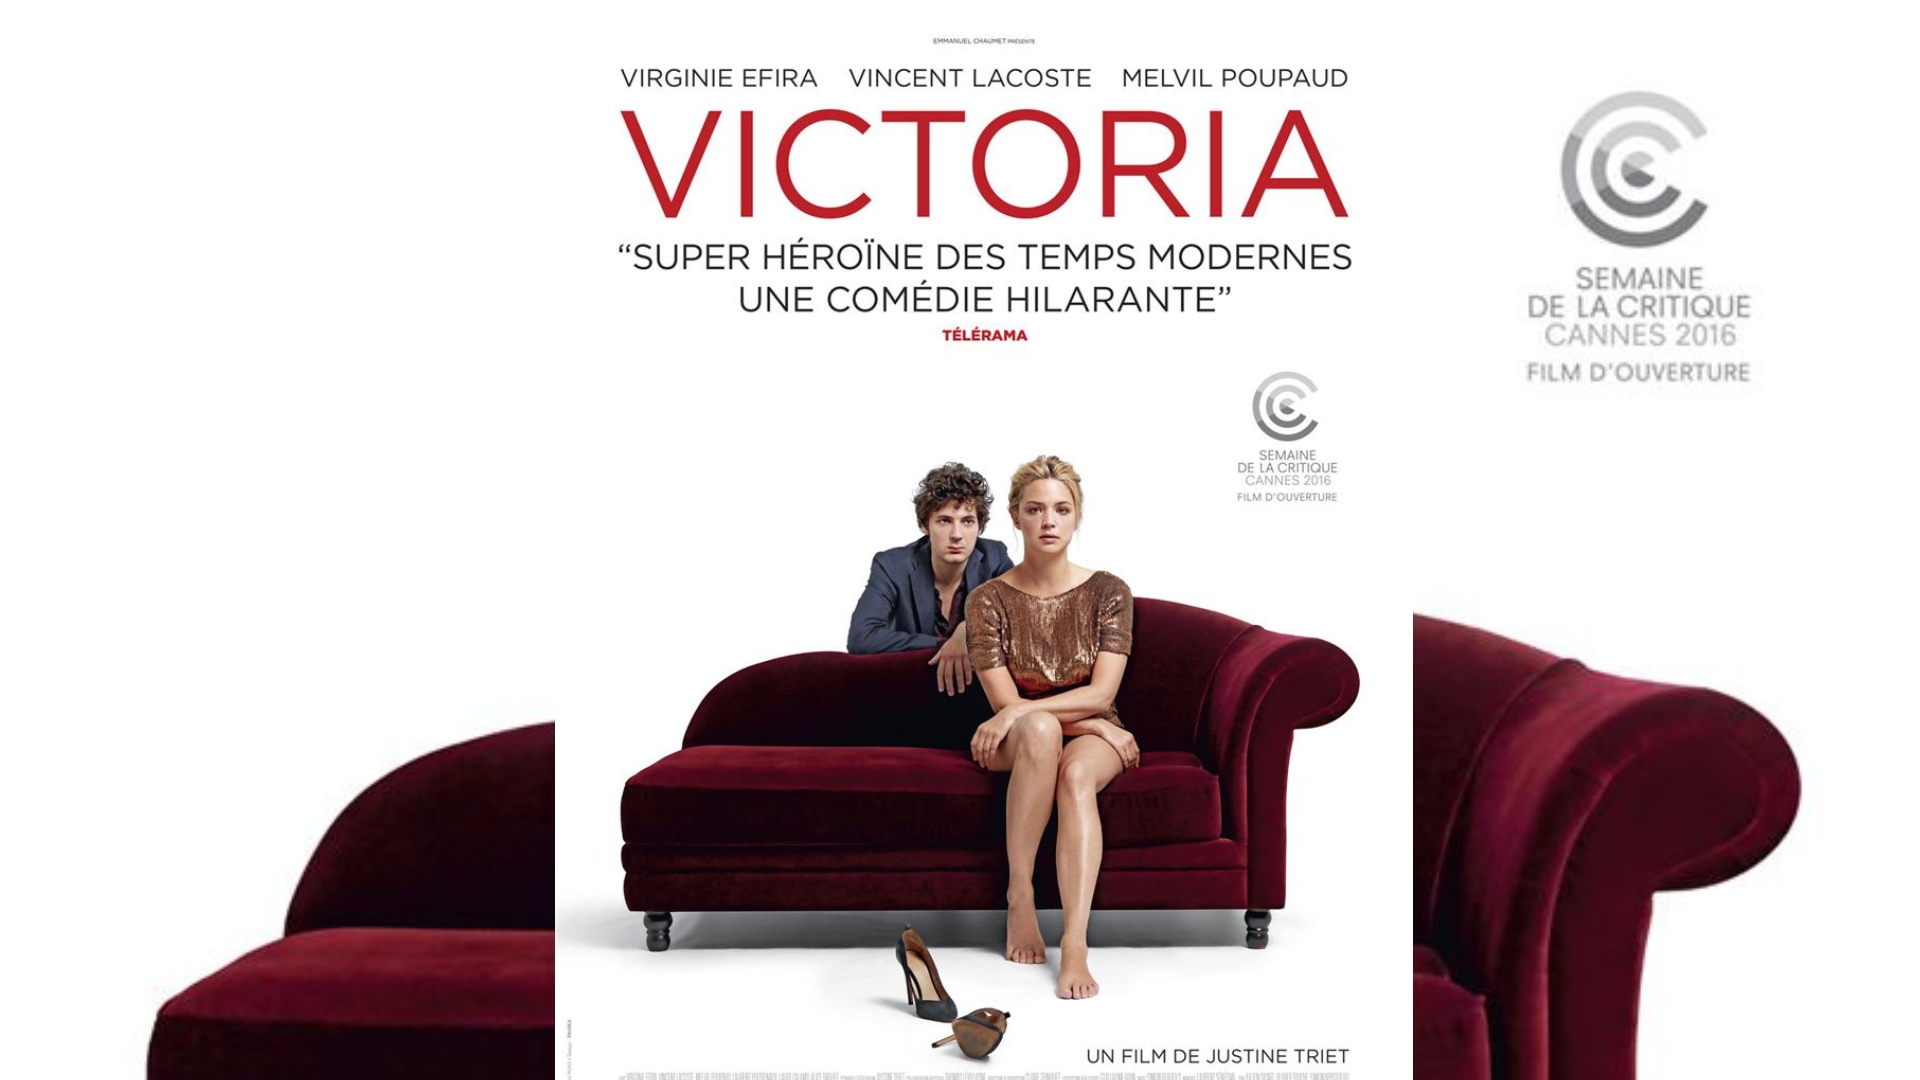 Victoria // Source : Ecce films